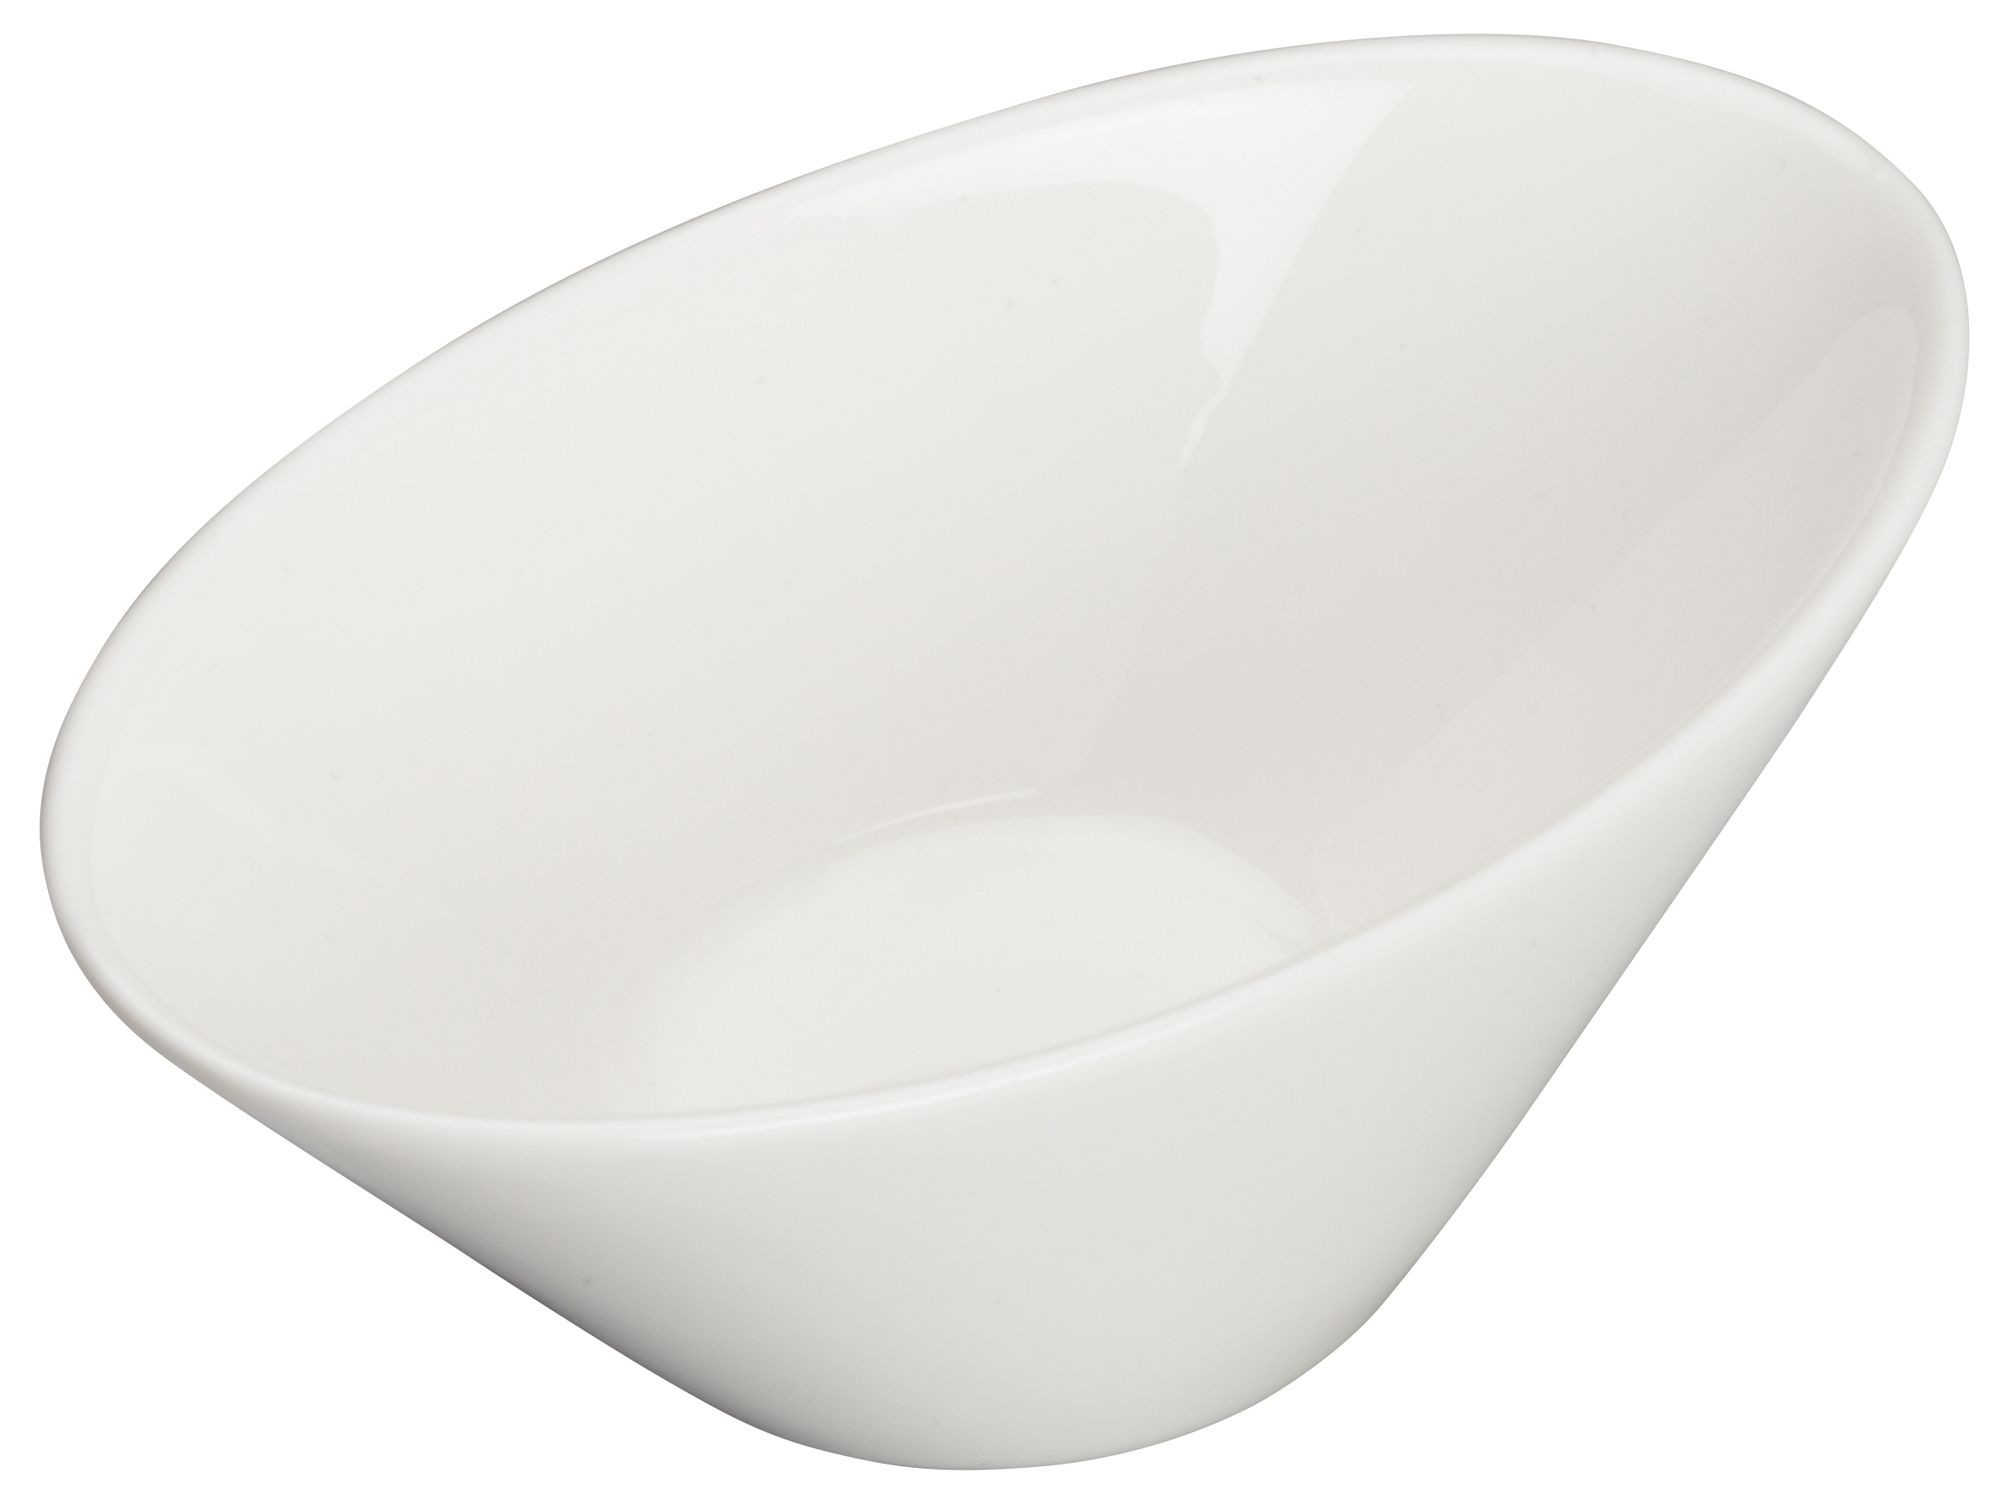 Winco WDP021-108 Mescalore Porcelain Bright White Oval Dish 4" x 2-1/2"